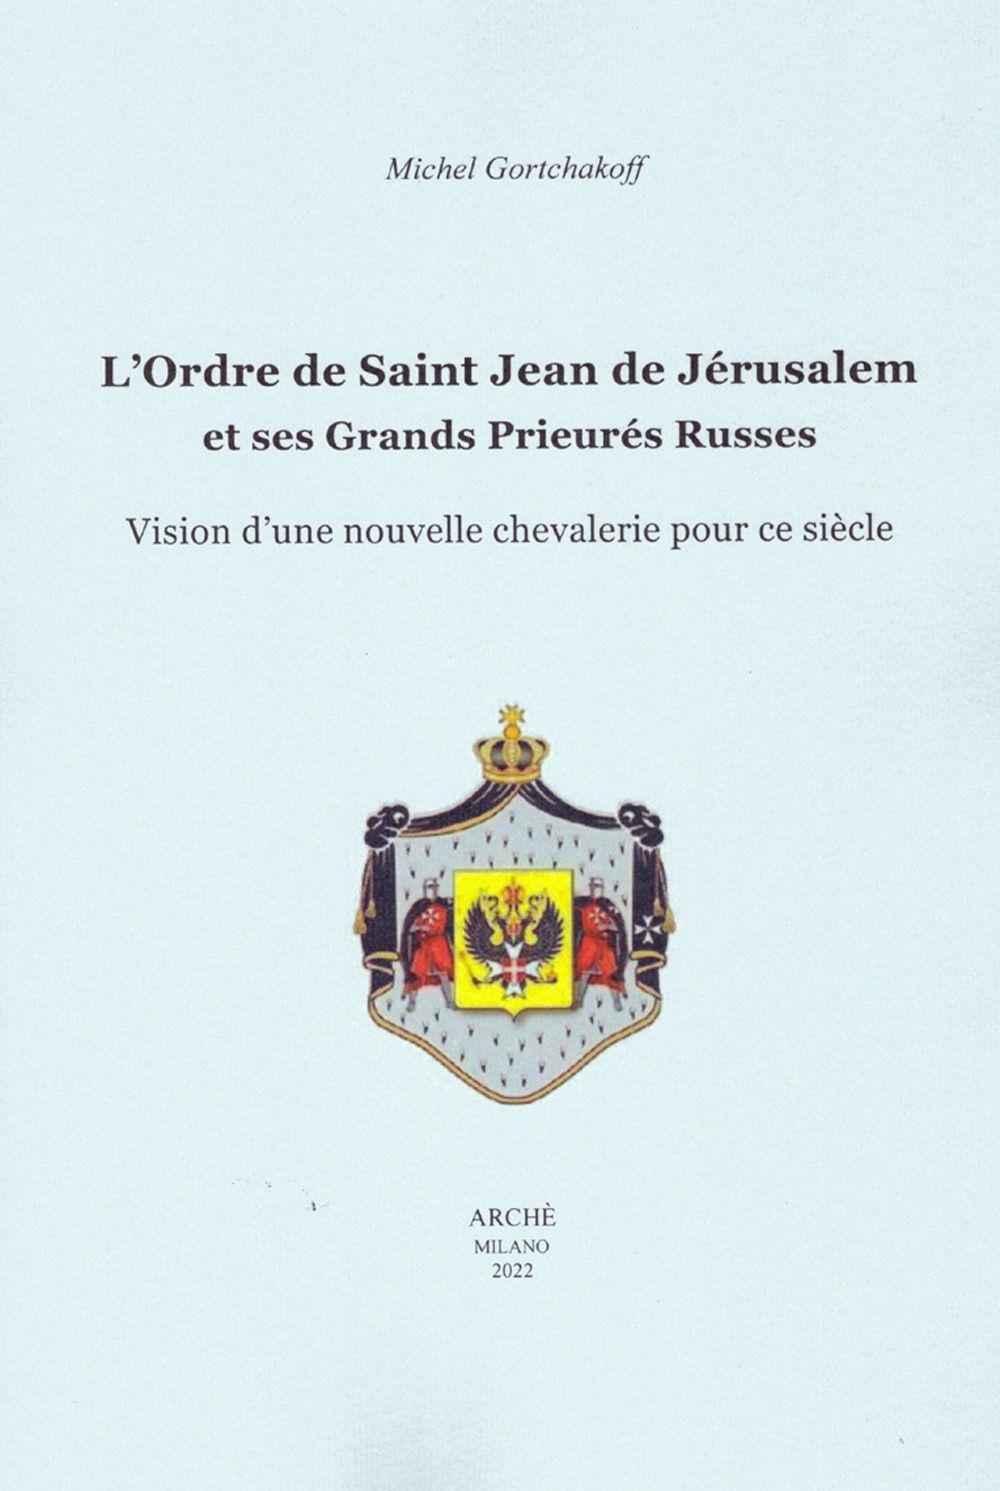 L'ordre de Saint-Jean de Jérusalem et ses Grands Prieurés Russes. Vision d'une nouvelle chevalerie pour ce siècle